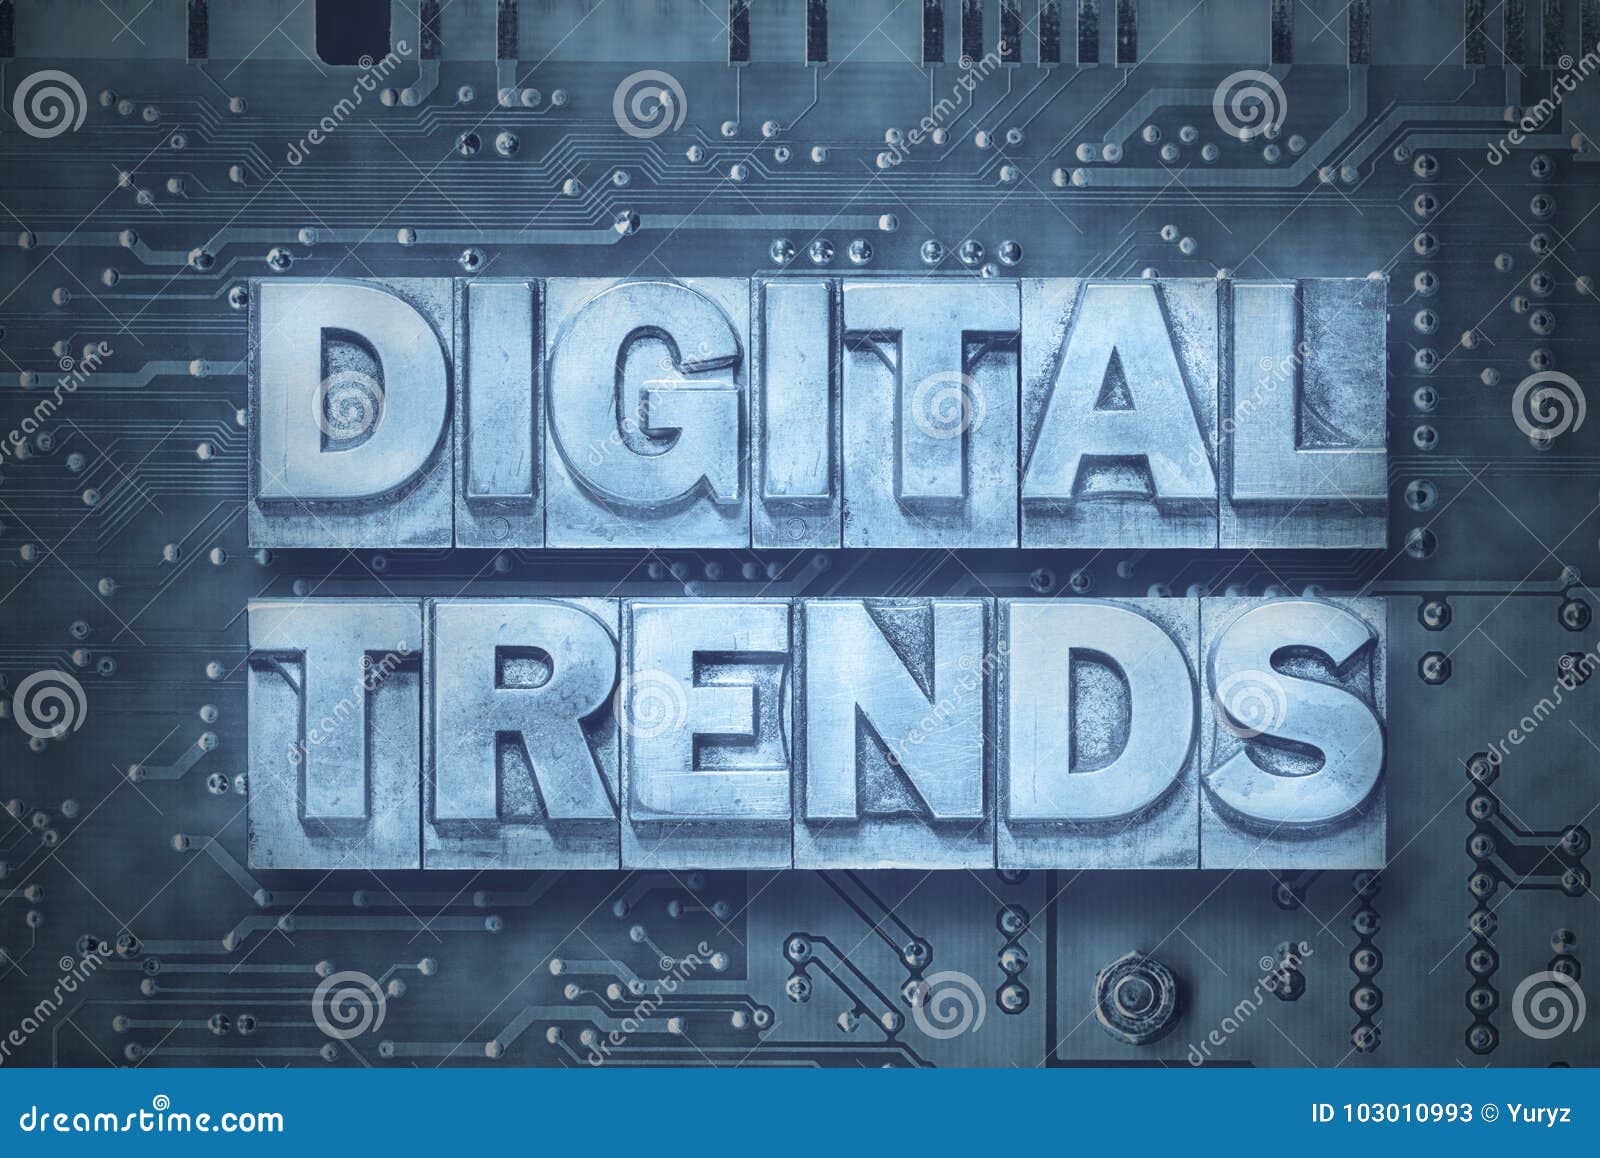 digital trends pc board